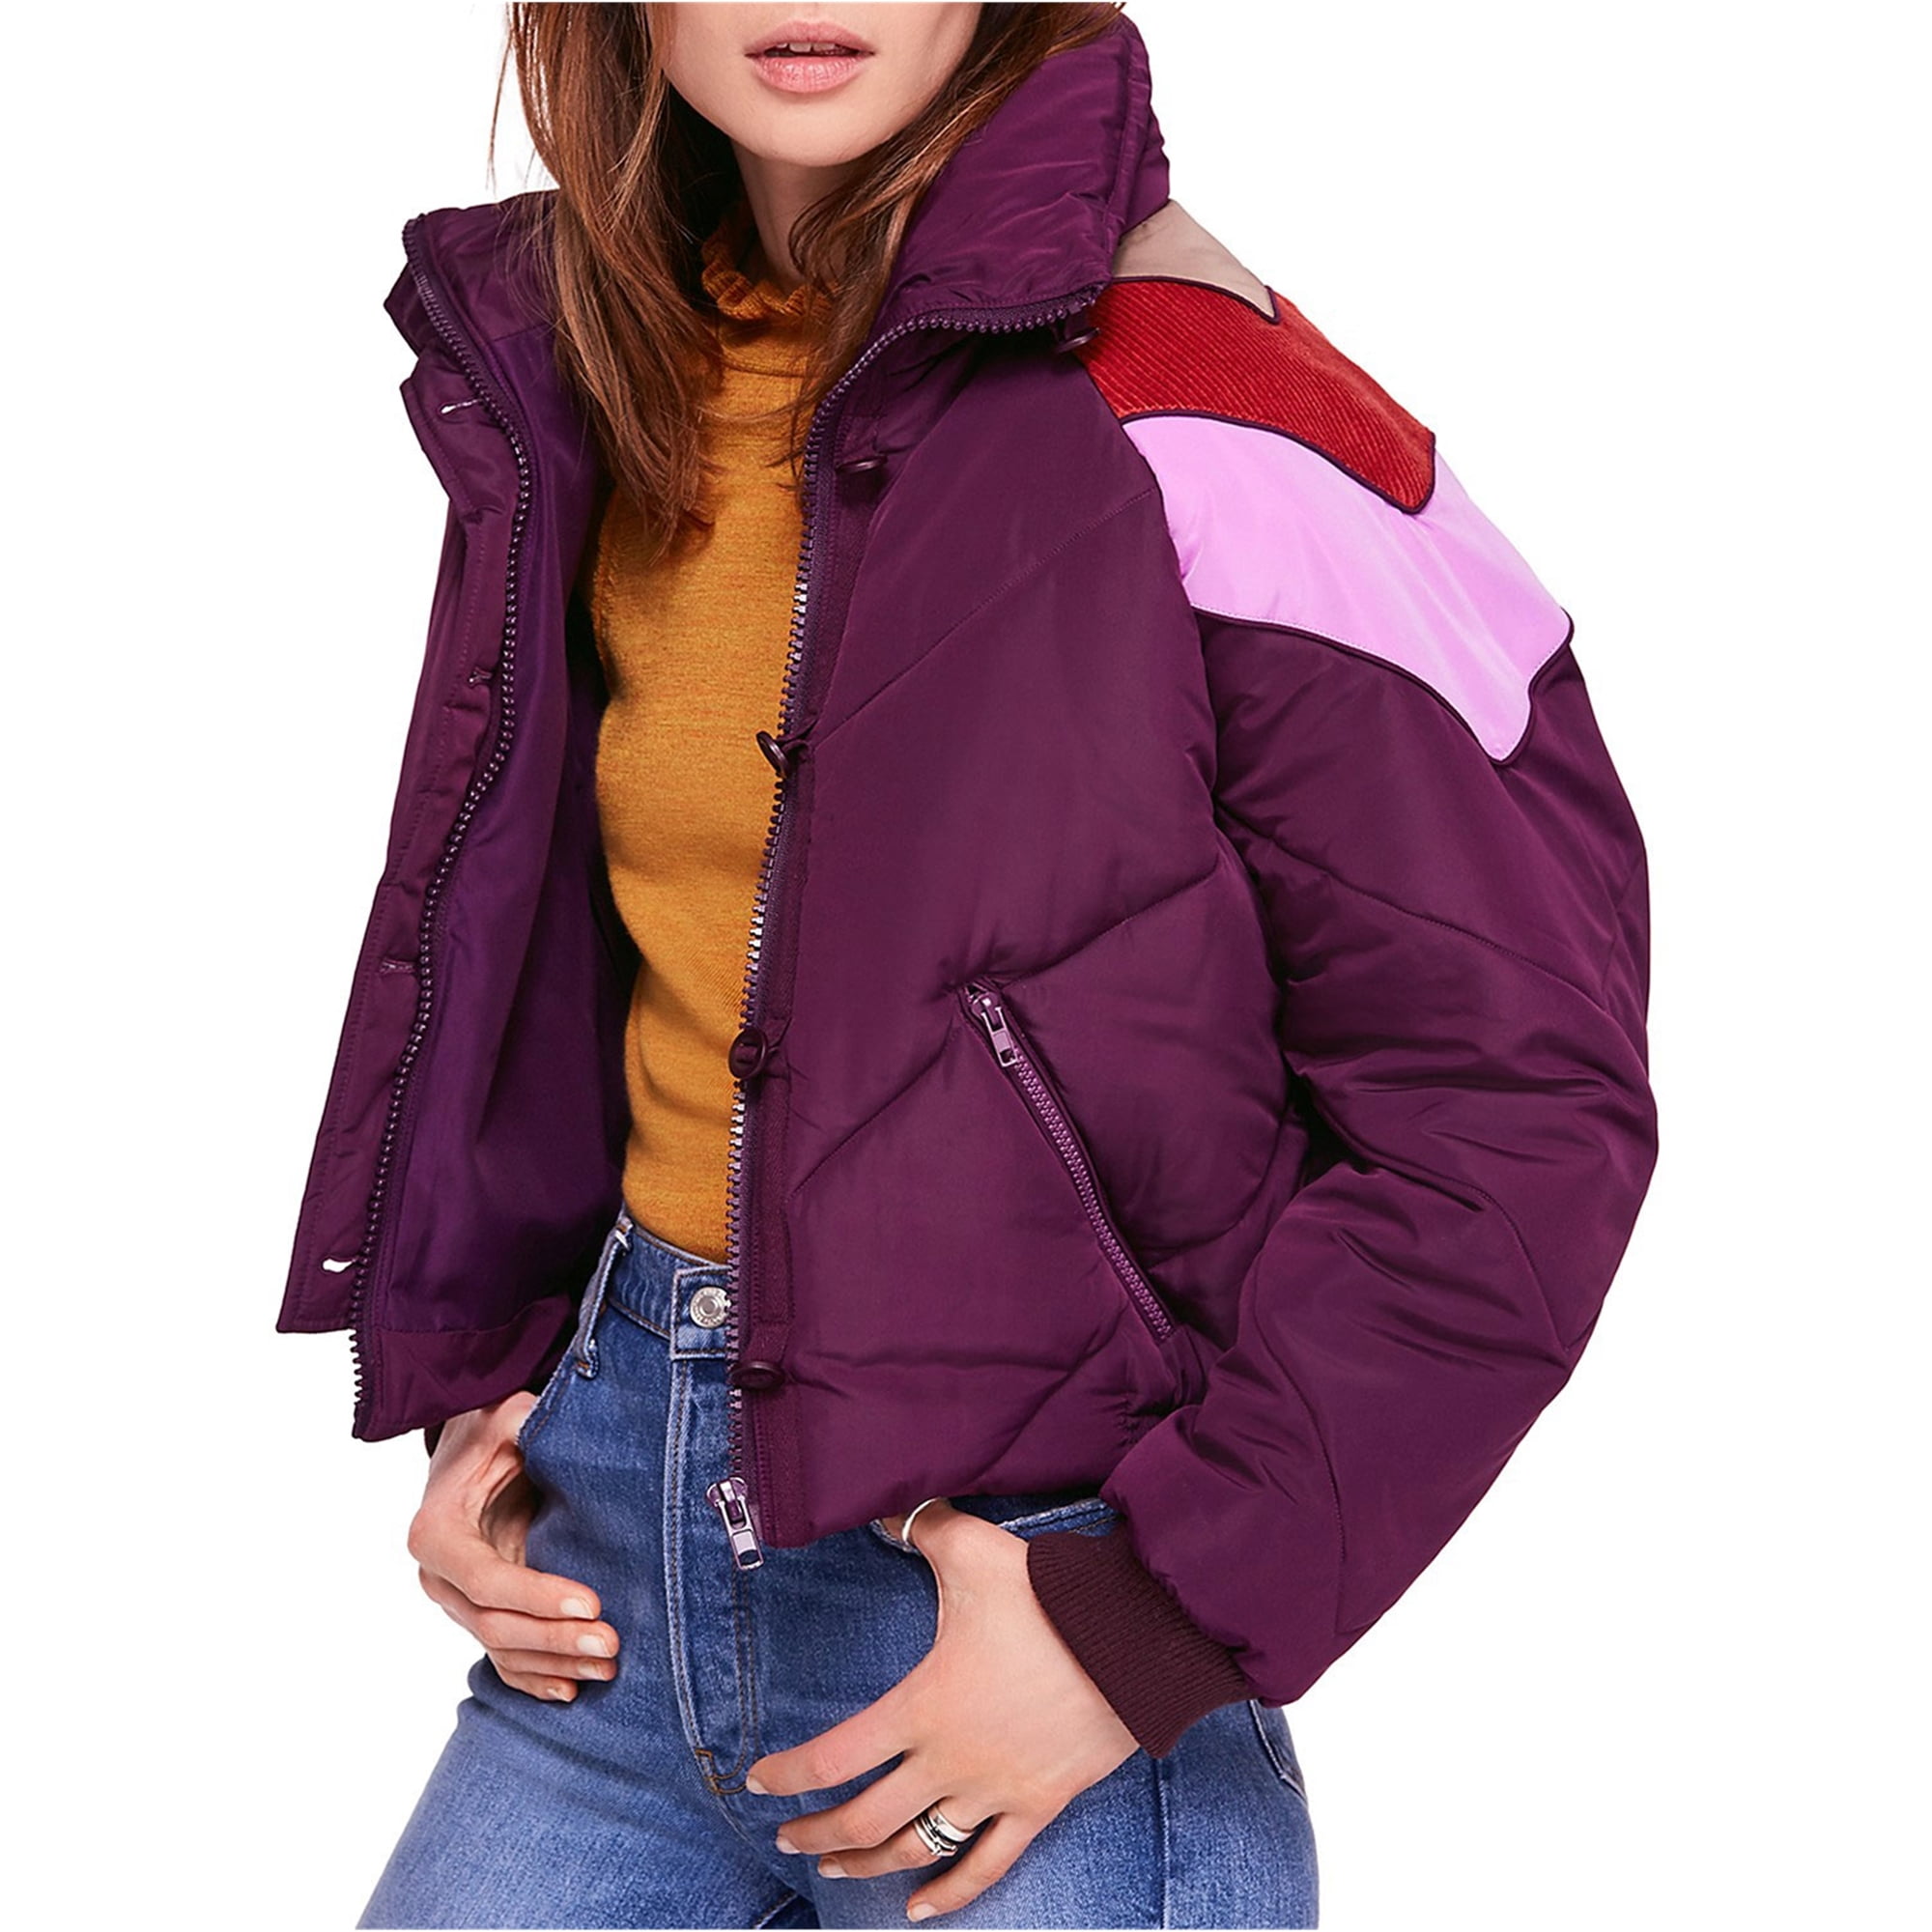 free people purple jacket